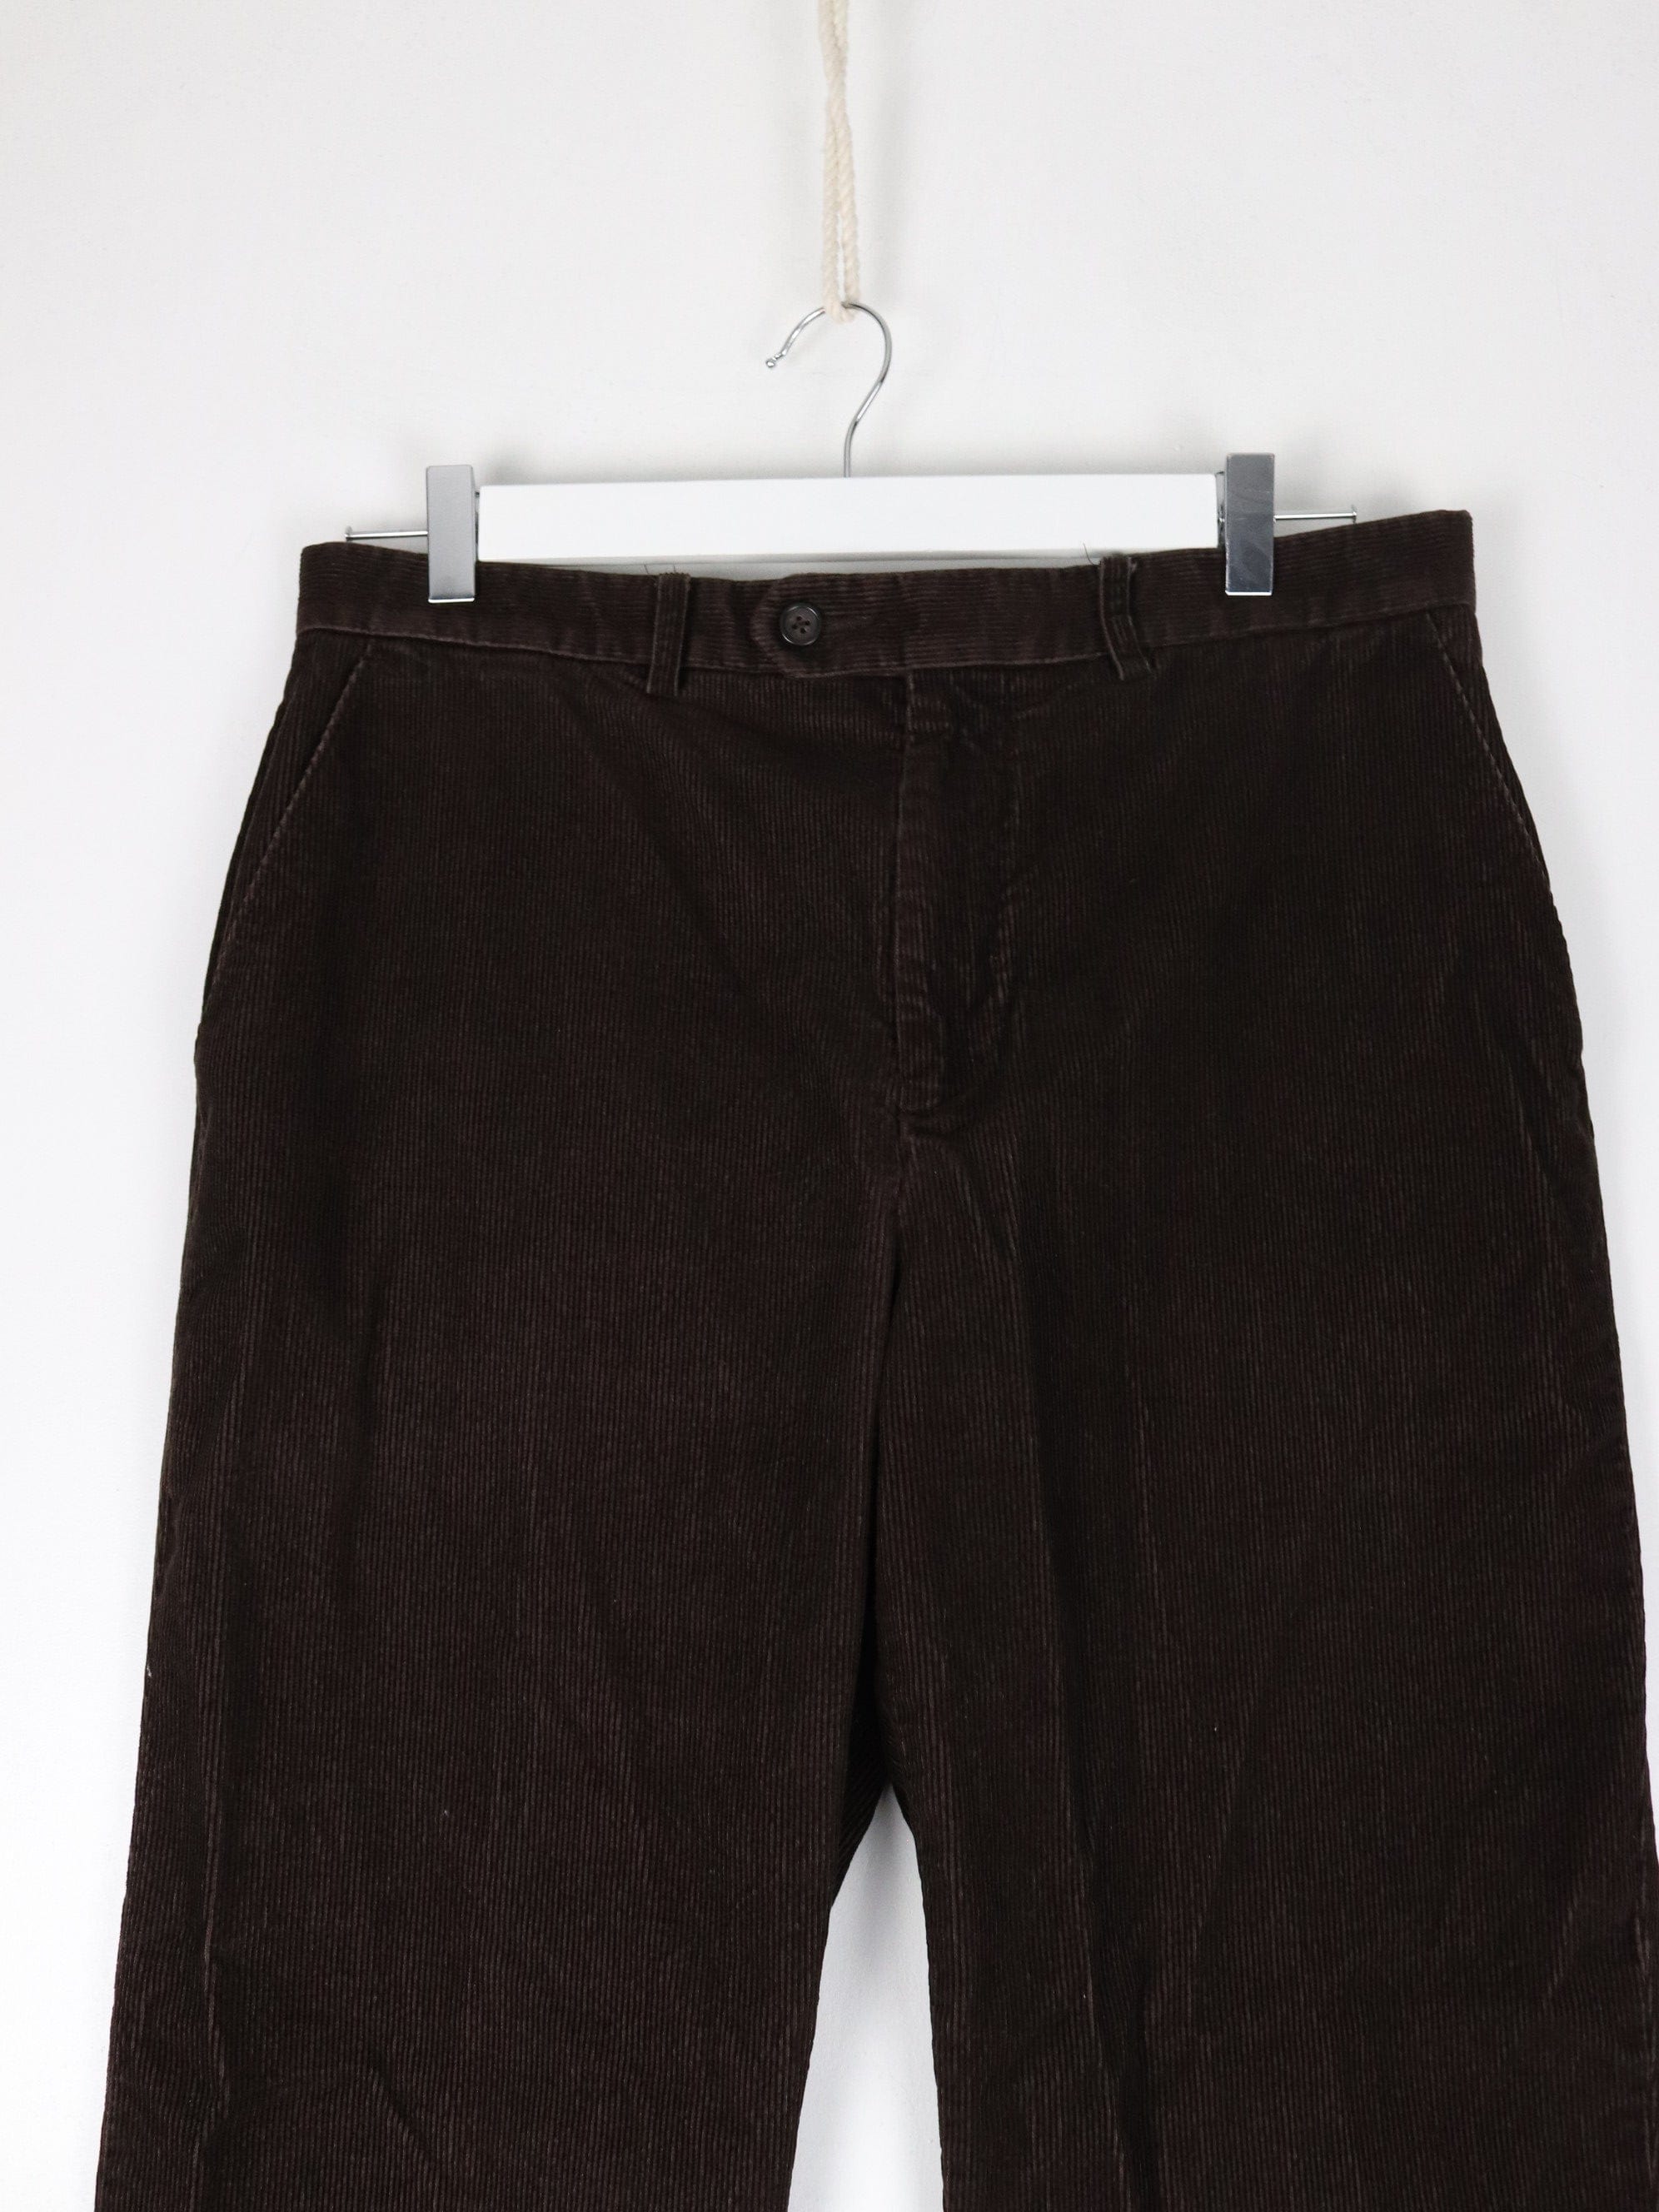 Lauren Ralph Lauren Pants Womens 34 x 30 Brown Corduroy Trousers